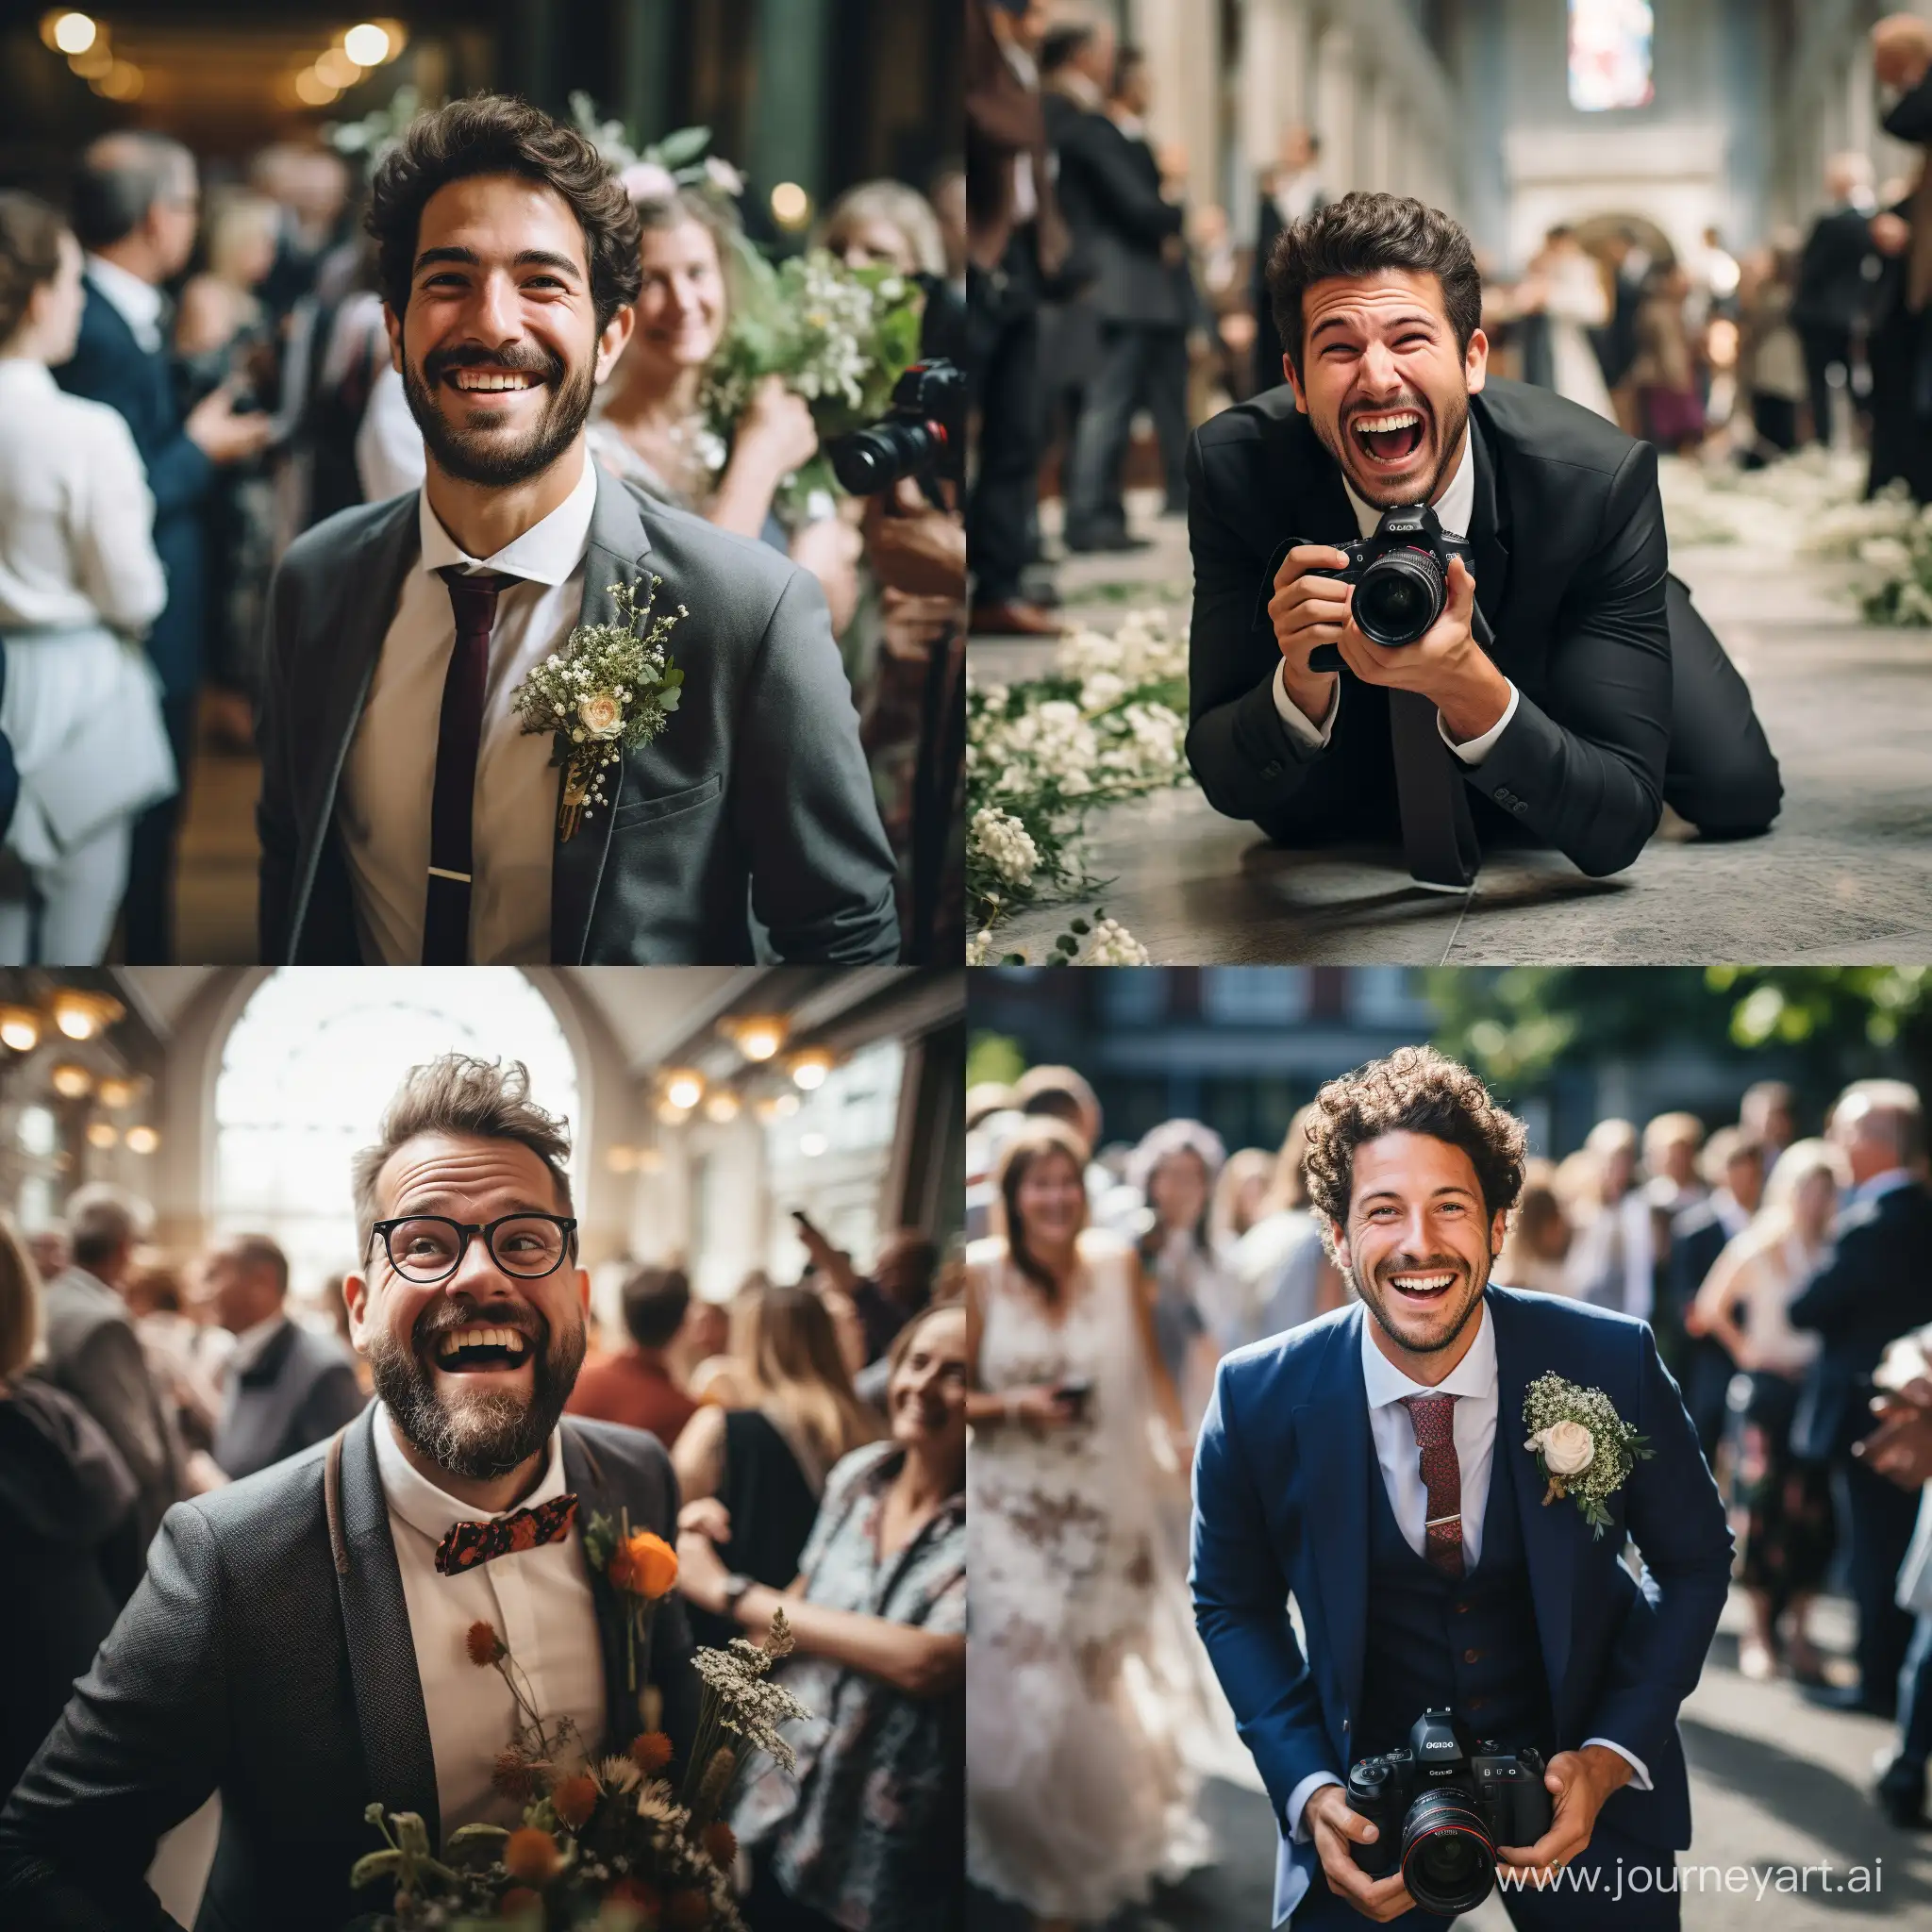 Joyful-Wedding-Photographer-Capturing-Blissful-Moments